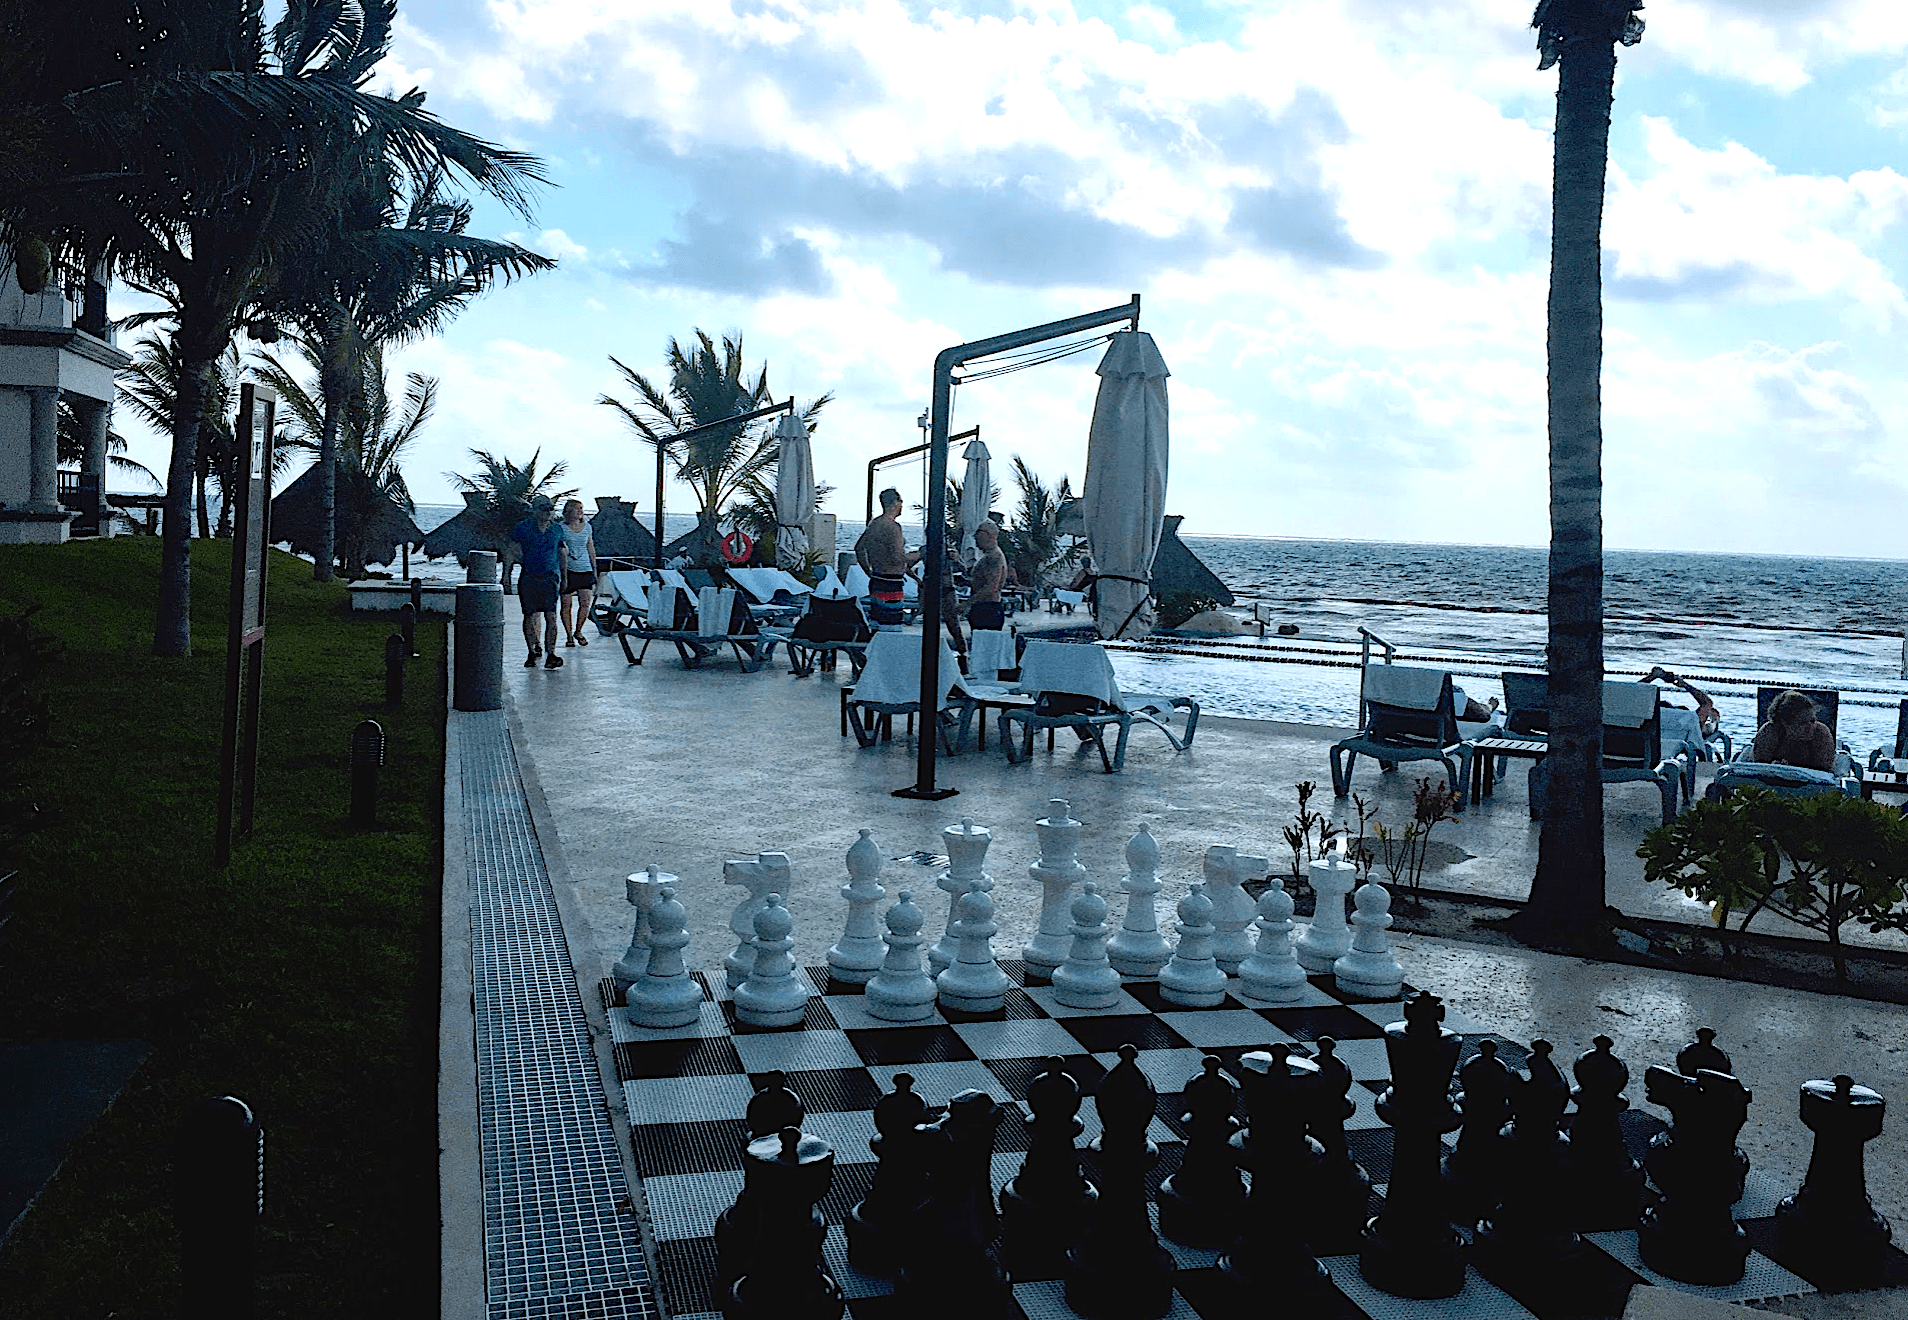 Chess at the beach - Ventus at Marina El Cid